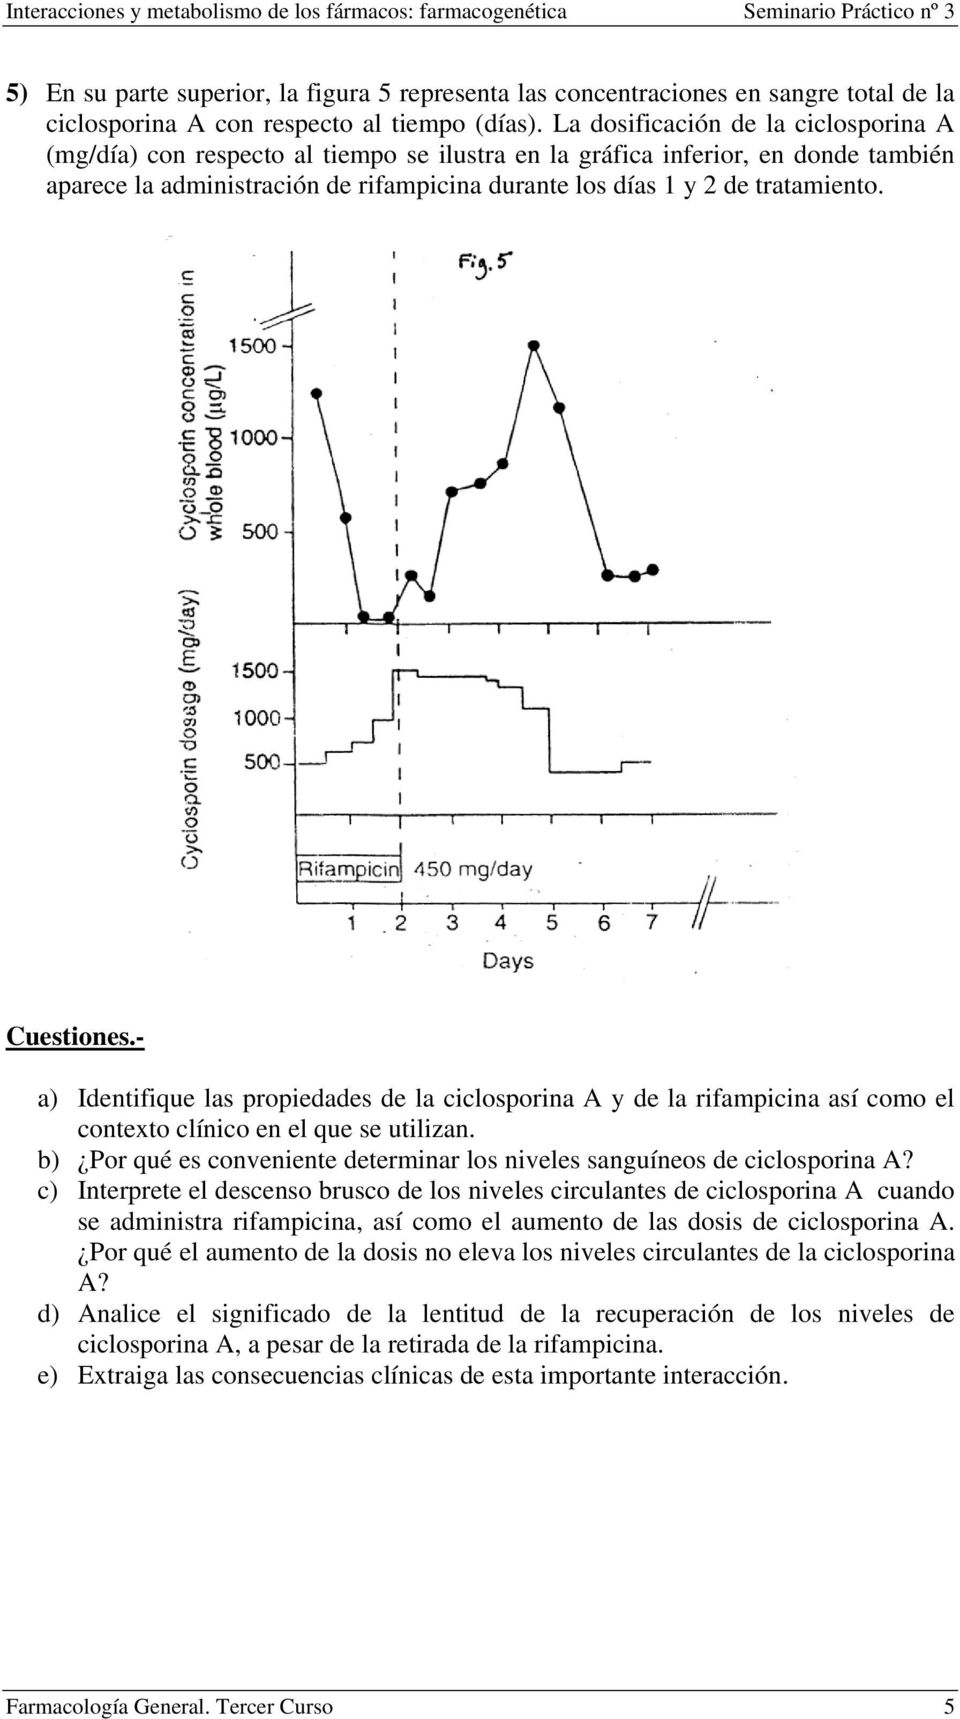 a) Identifique las propiedades de la ciclosporina A y de la rifampicina así como el contexto clínico en el que se utilizan.